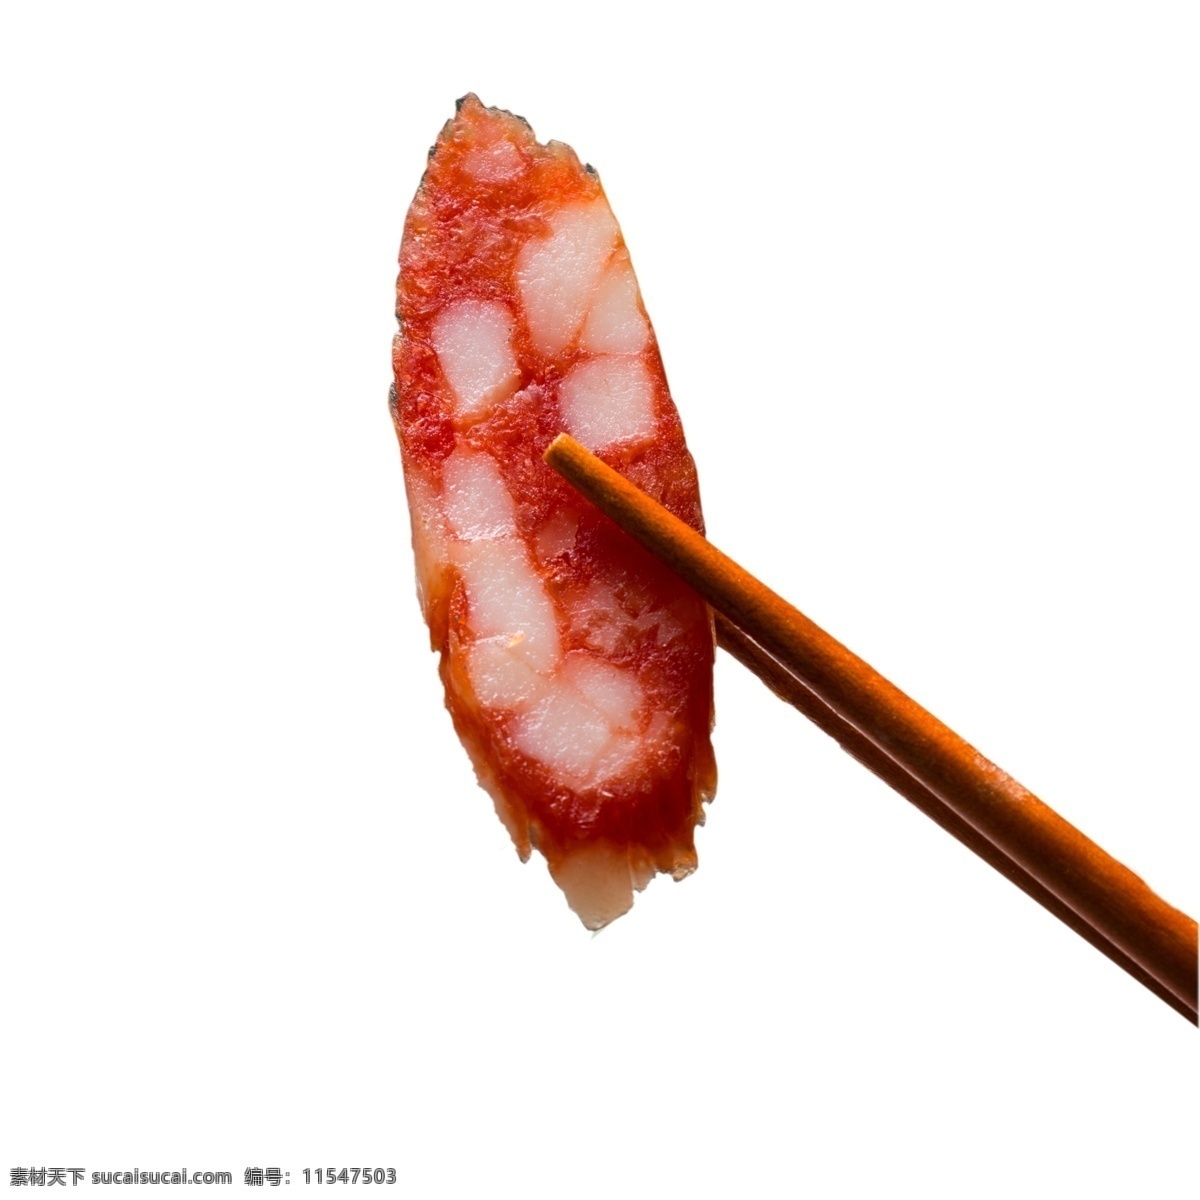 筷子 夹 片 香肠 免 扣 图 新鲜食材 一块 斜切 好吃的 用筷子 夹起 一片香肠 免扣图